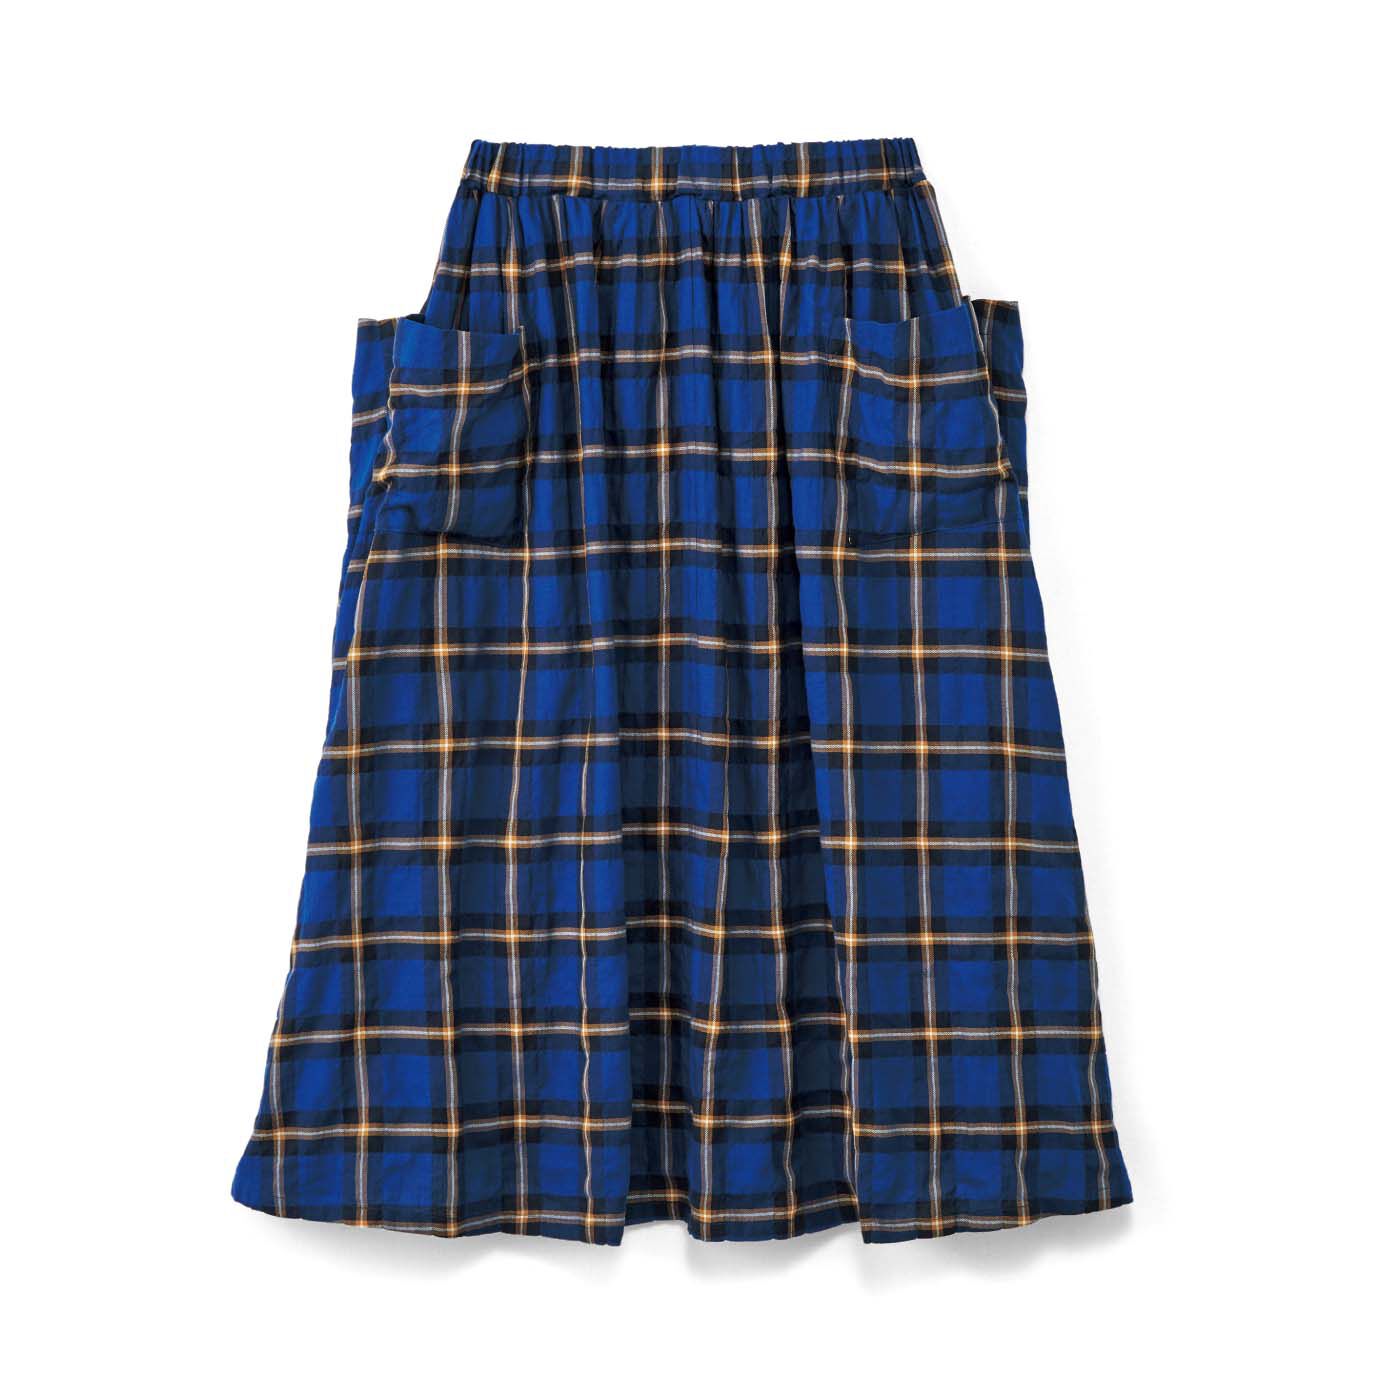 エルメント|el:ment　ヘリンボーンチェックの播州織生地が魅力 マルチポケットロングスカート|大きめの仕切りポケットが左右に4つ。